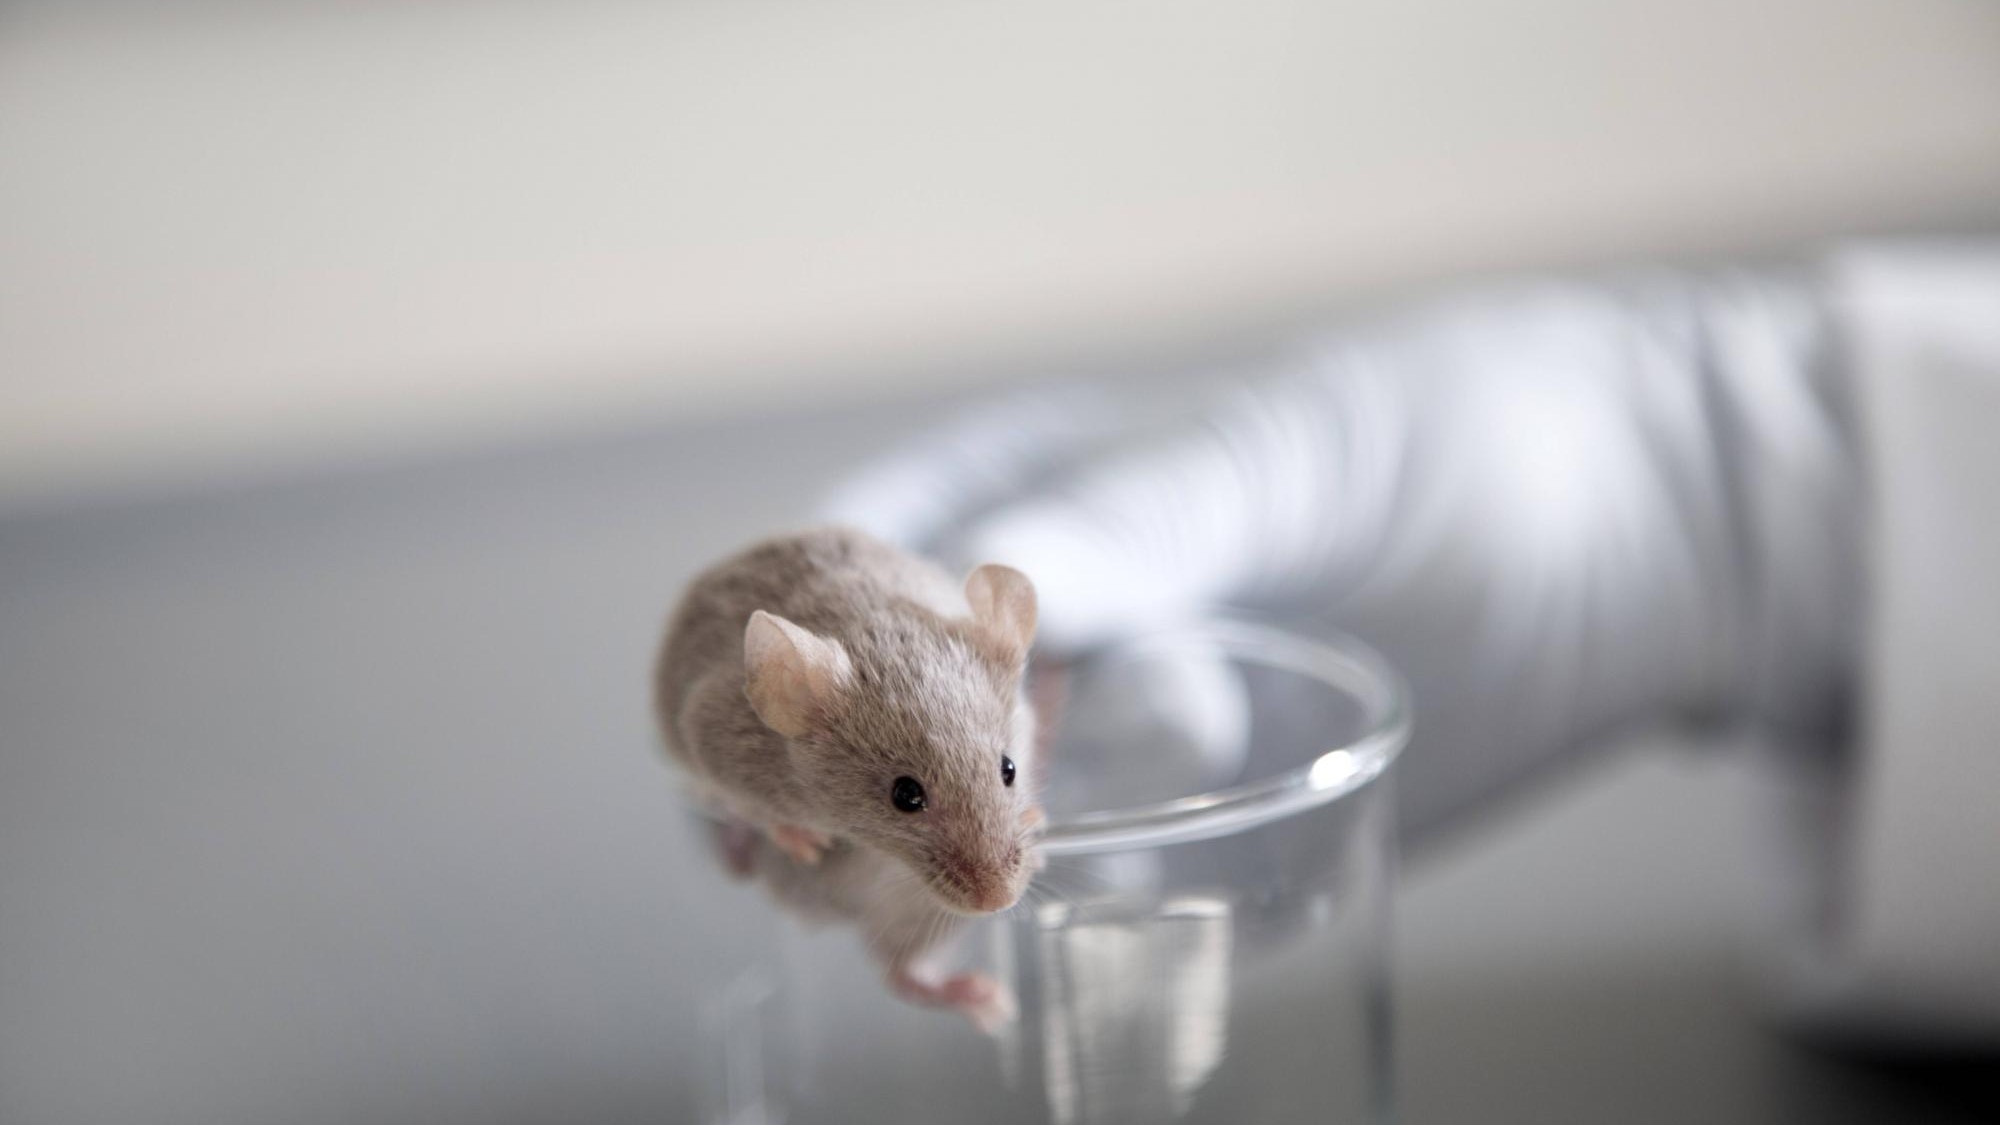 Medikamentenforschung - EMA plant zunächst keinen Verzicht auf Tierversuche